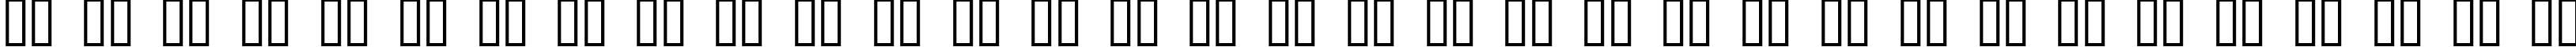 Пример написания русского алфавита шрифтом Quasi